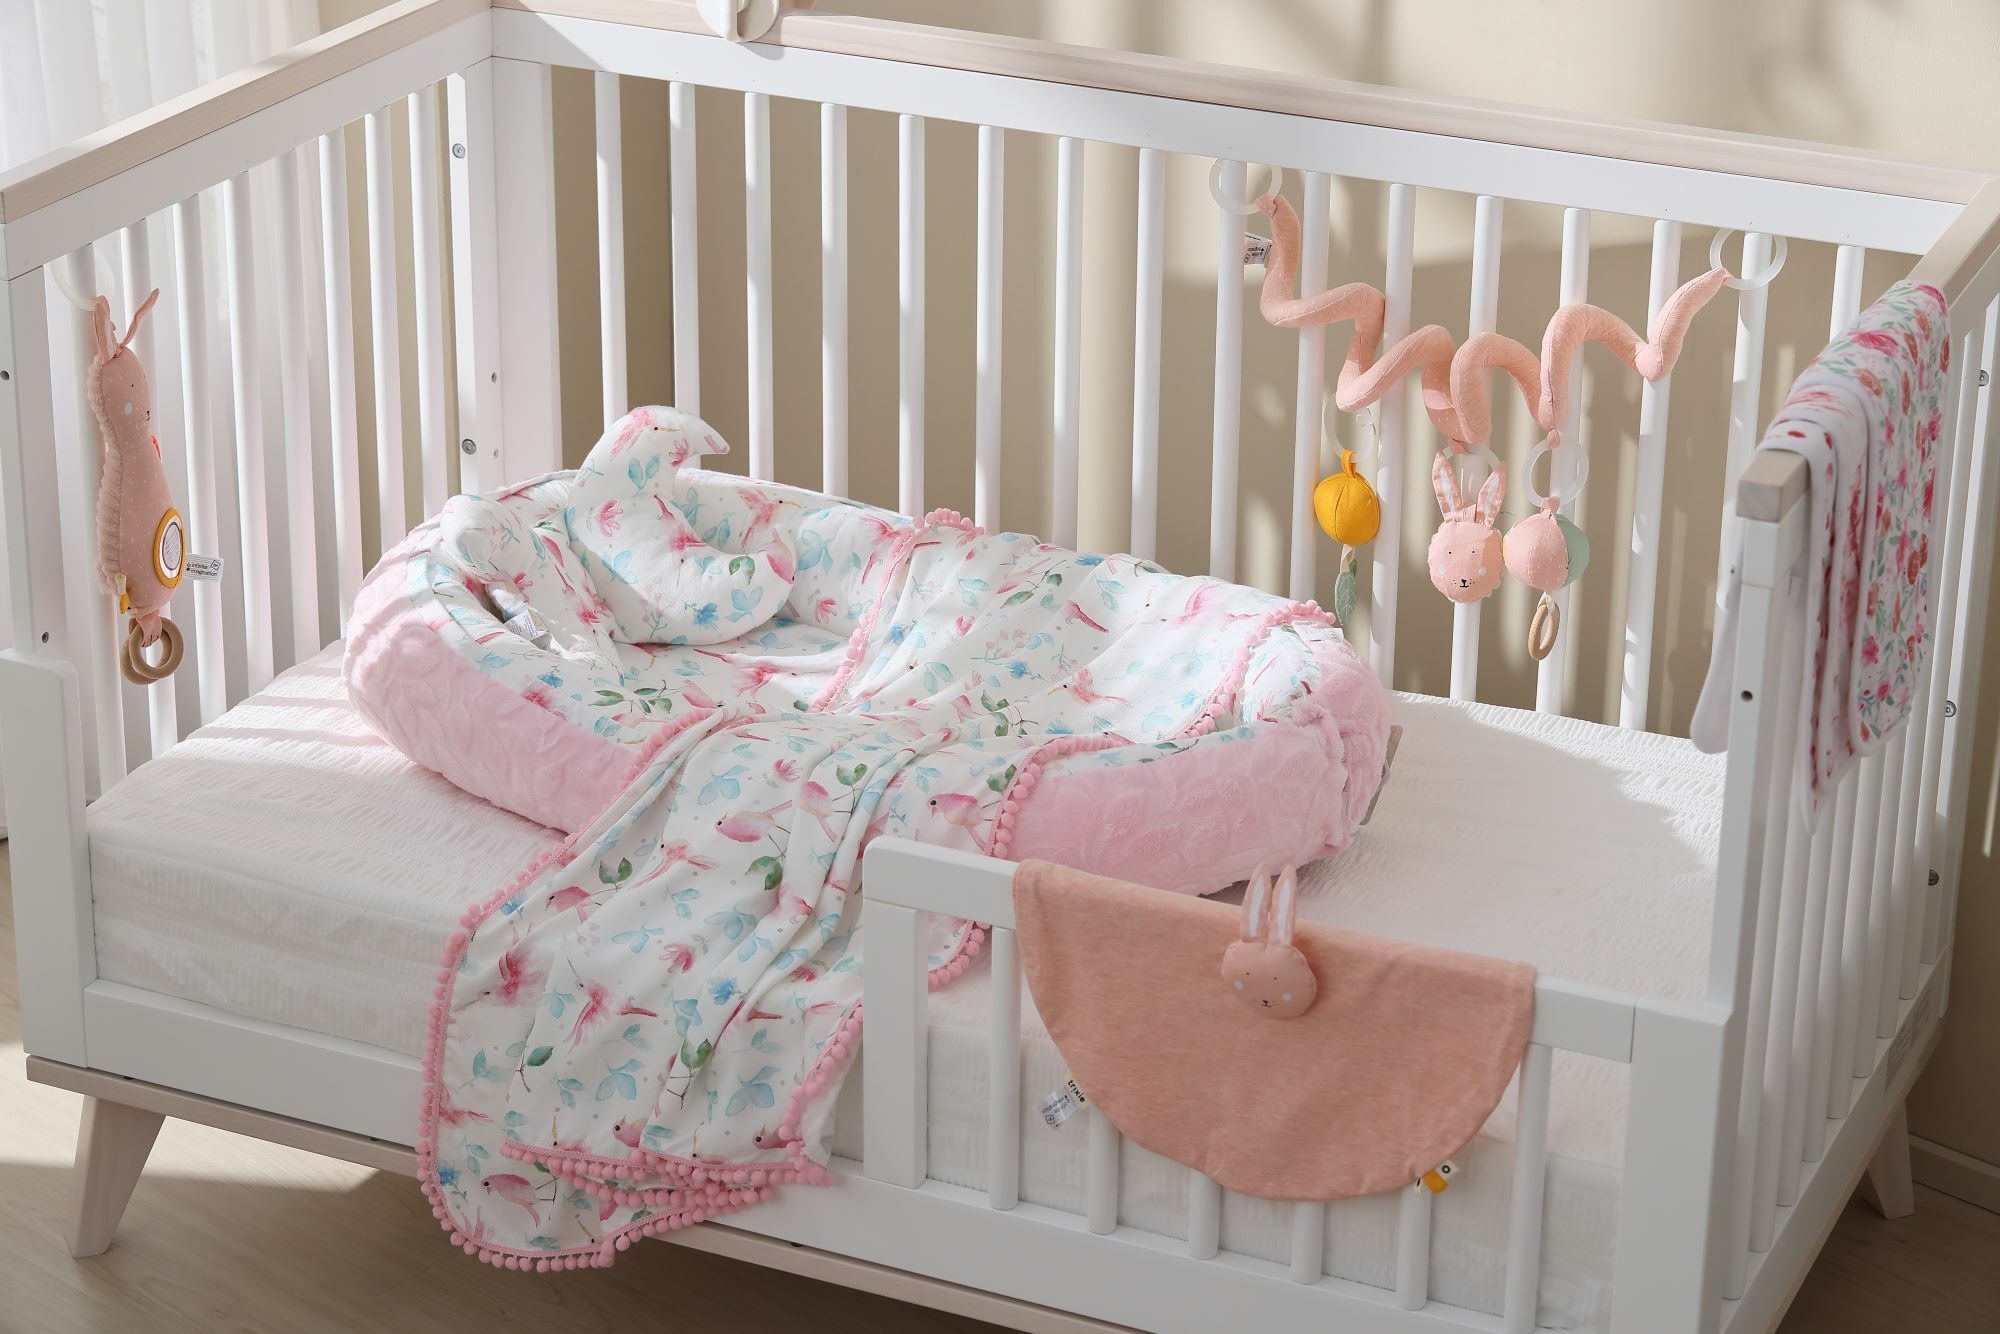 嬰兒床上擺著maylily睡窩以及trixie安撫玩具